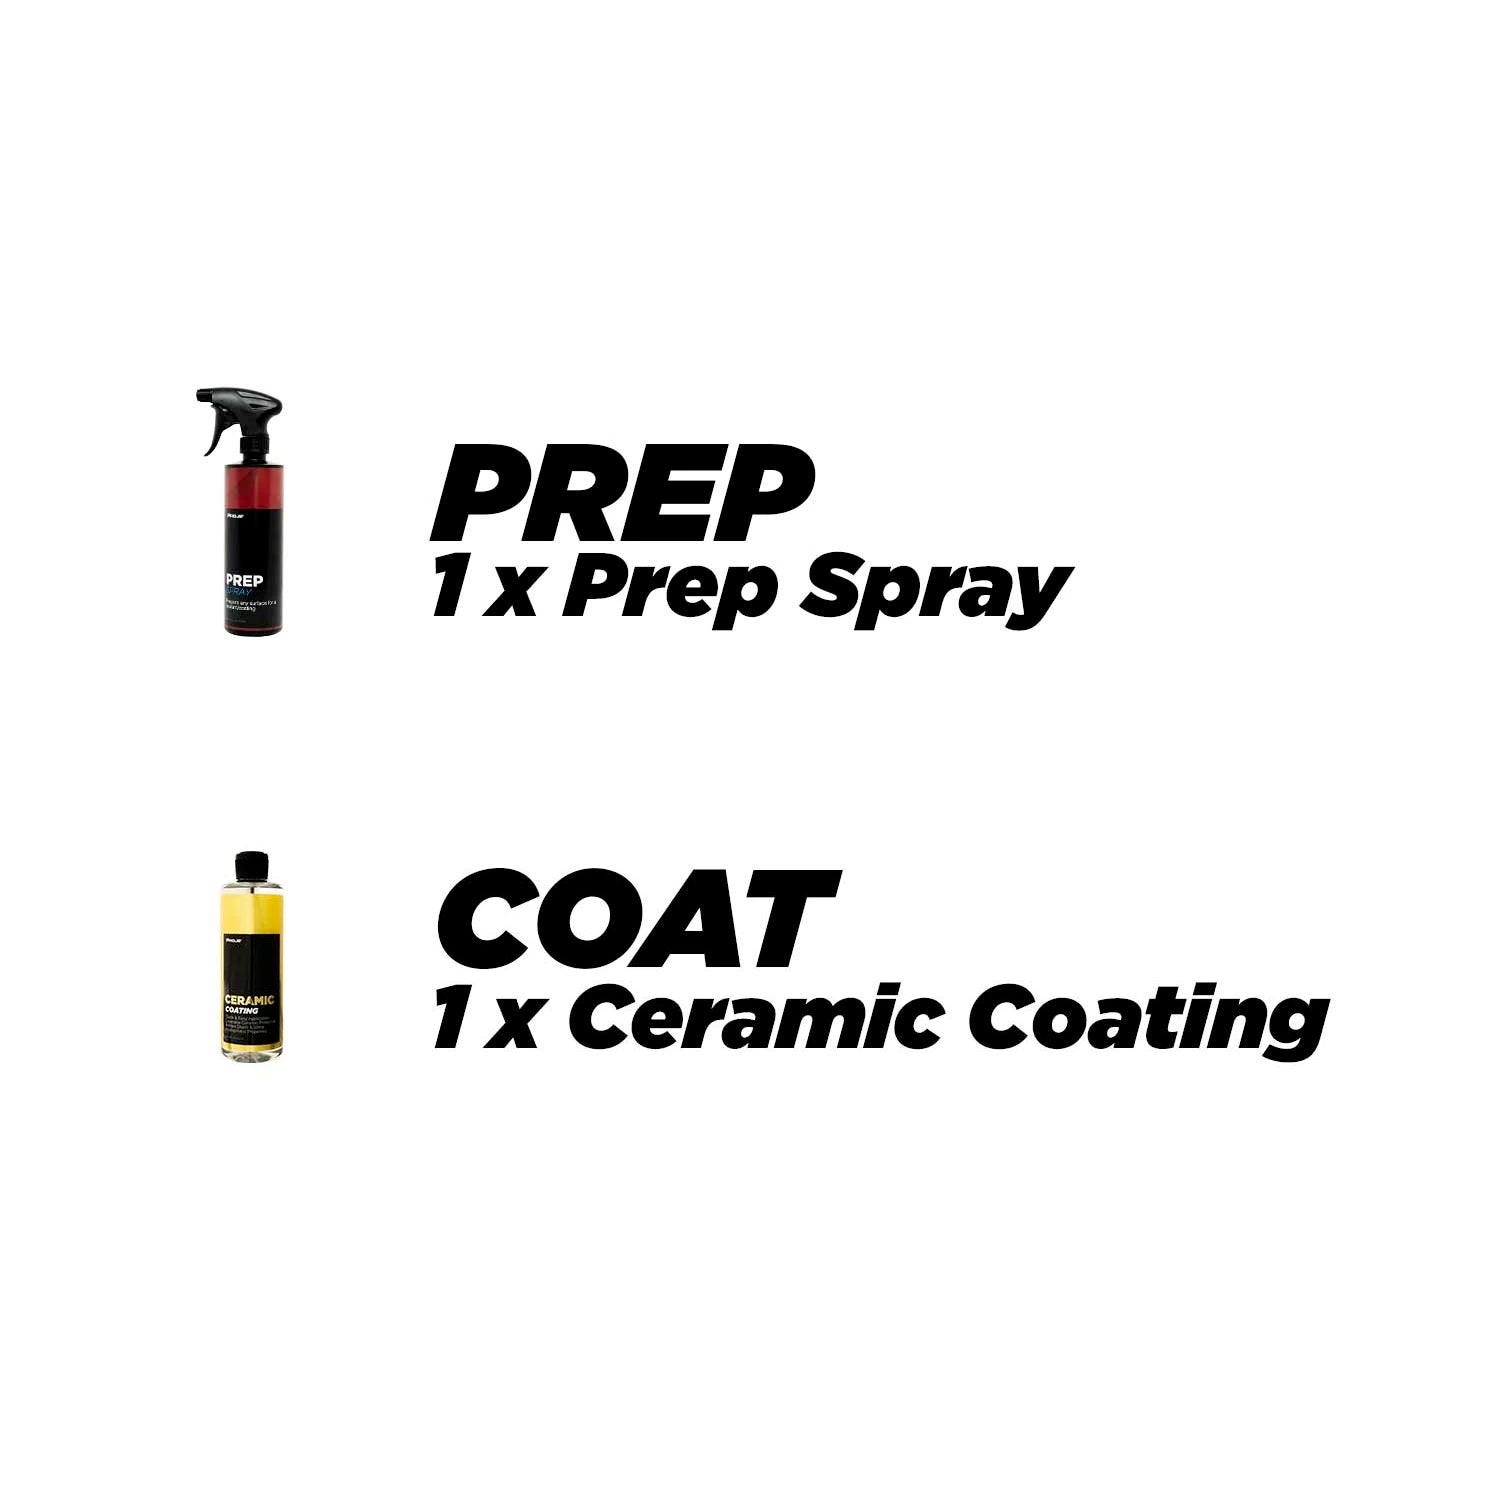 Proje Premium Car Care Deluxe Ceramic Kit 5-Piece | Premium Ceramic Coating  Kit for Cars Trucks RVs and Motorcycles | Prep Spray Ceramic Coating 